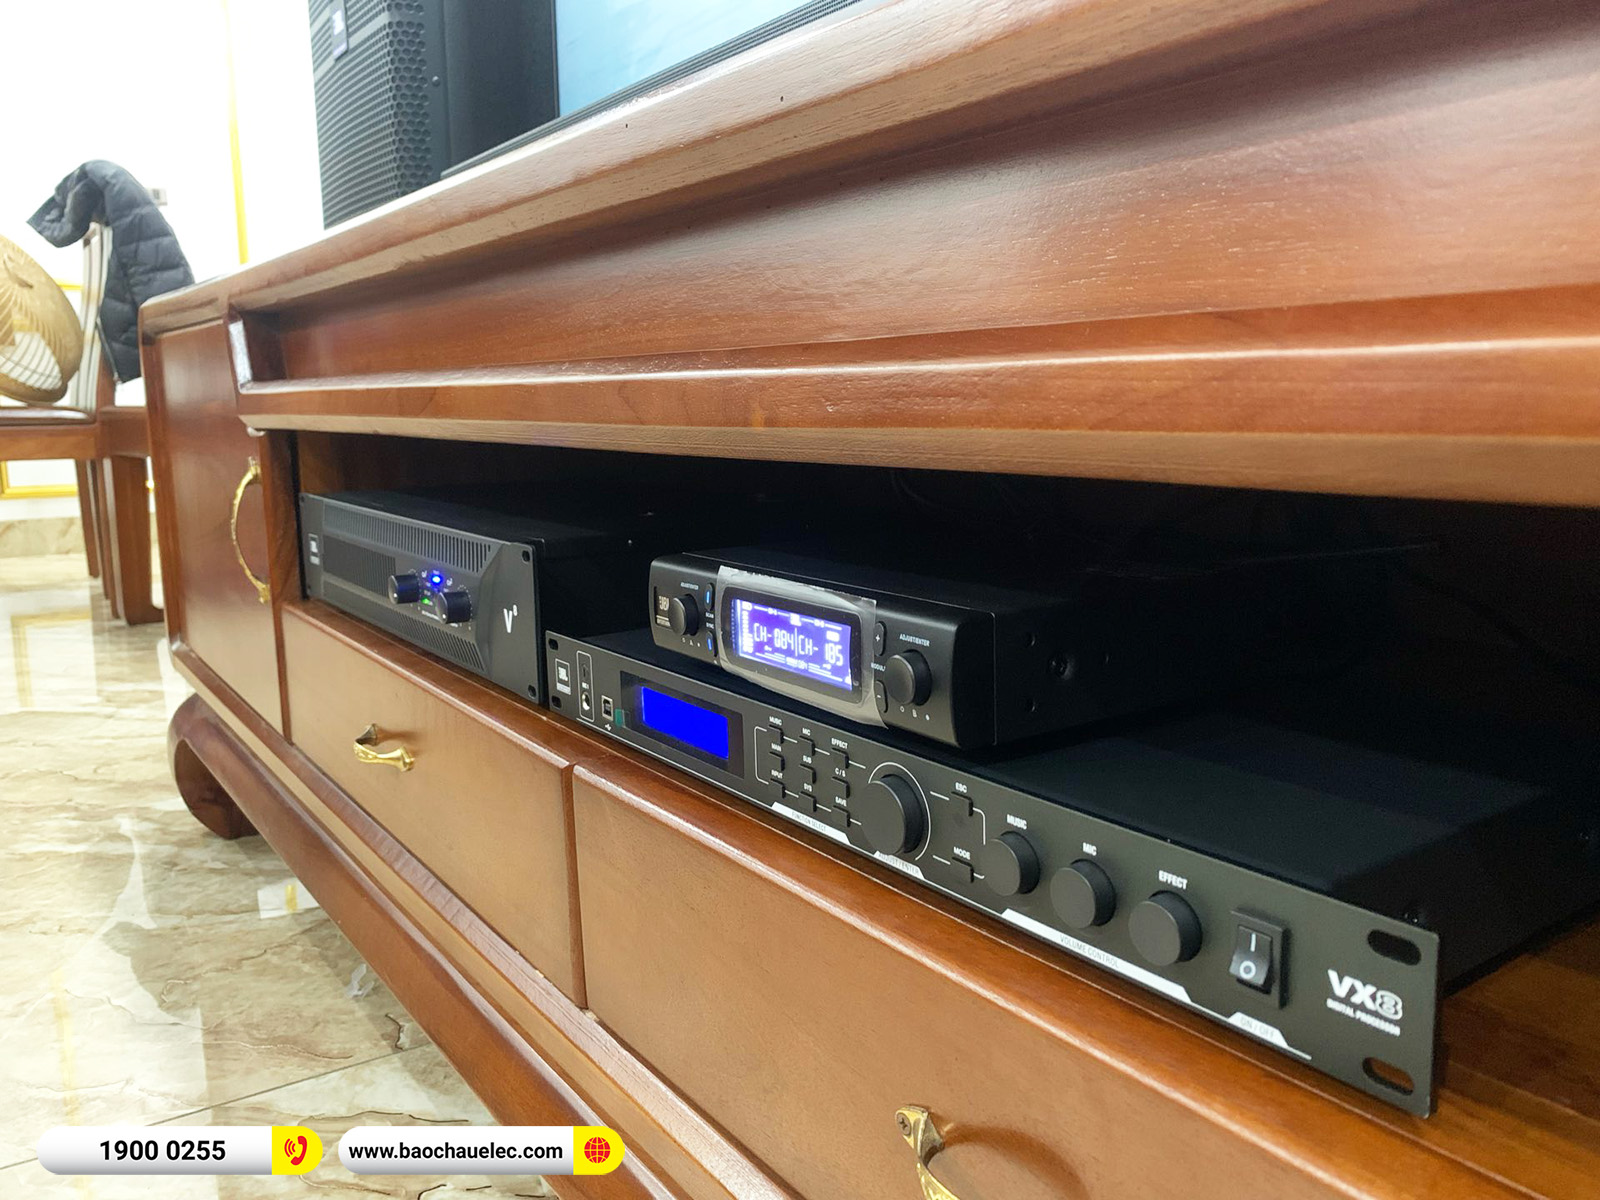 Lắp đặt dàn karaoke JBL gần 90tr cho anh Hùng tại Hà Nội (JBL KP4012 G2, JBL V8, JBL VX8, Pasion 12SP, VM300)